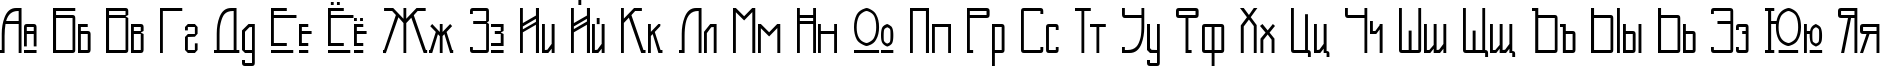 Пример написания русского алфавита шрифтом Kashmir